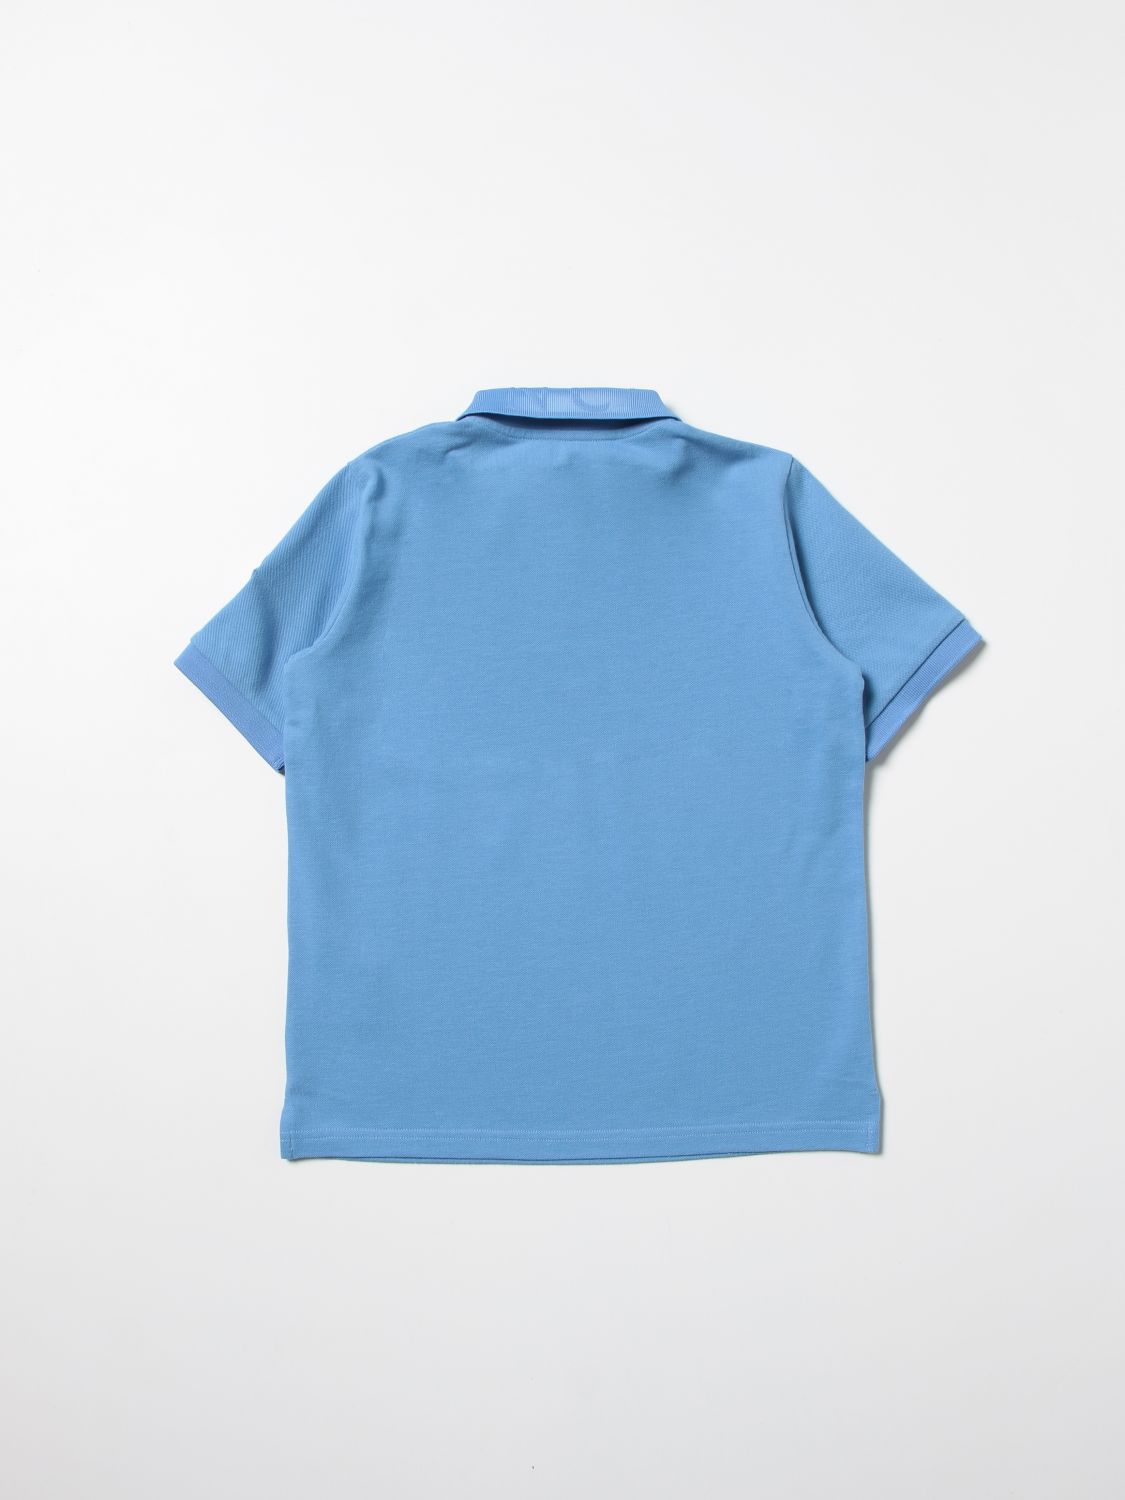 ポロシャツ モンクレール: ポロシャツ Moncler 男の子 アジュール 2